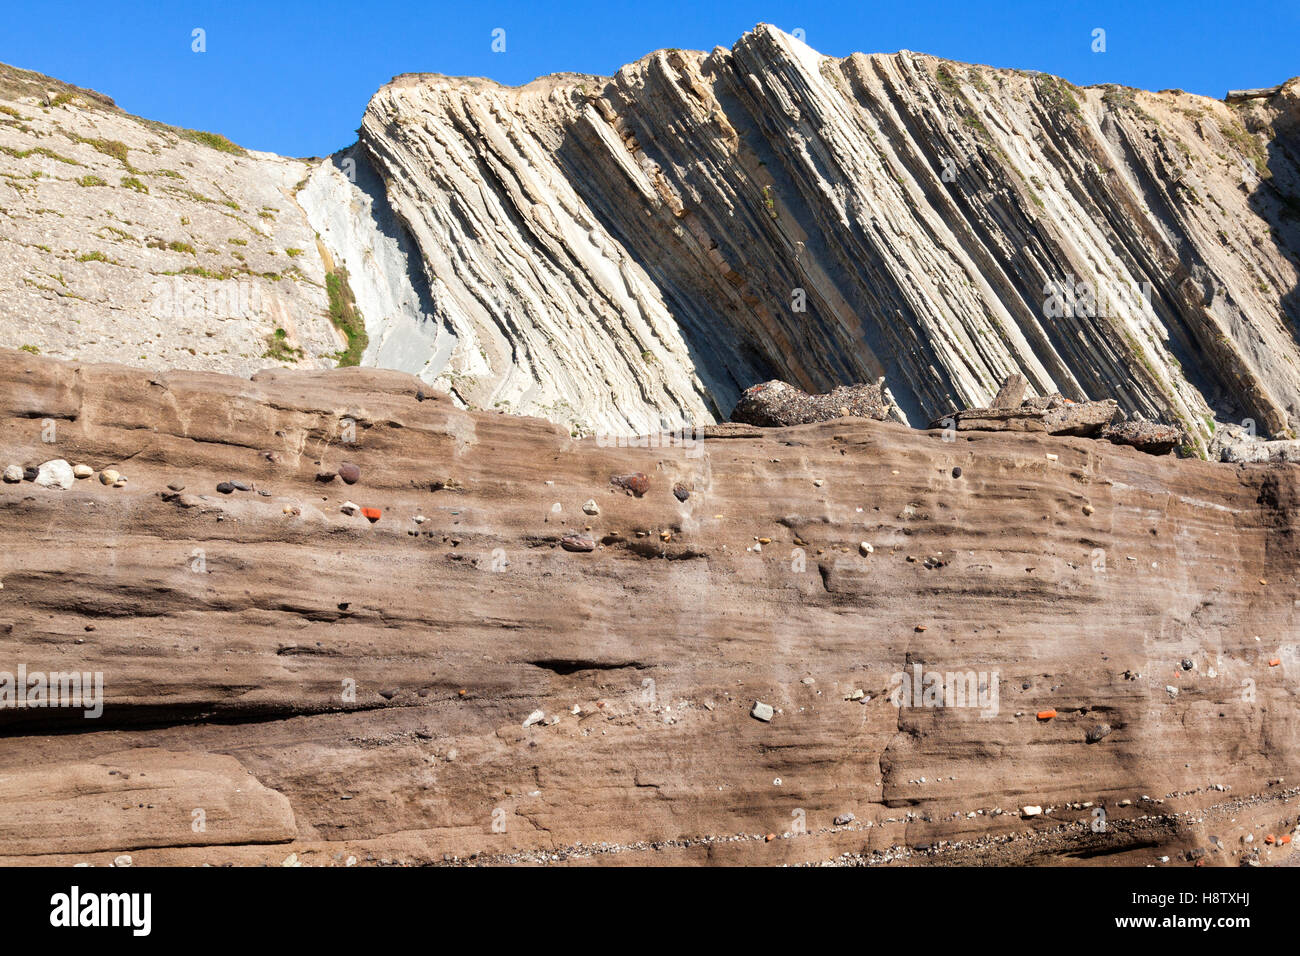 Tunelboca zementiert Strand von Biskaya, Spanien. Beispiel für das Anthropozän Ära Alter, mit einer 7 m Schicht aus industriellen Sedimentablagerungen Stockfoto